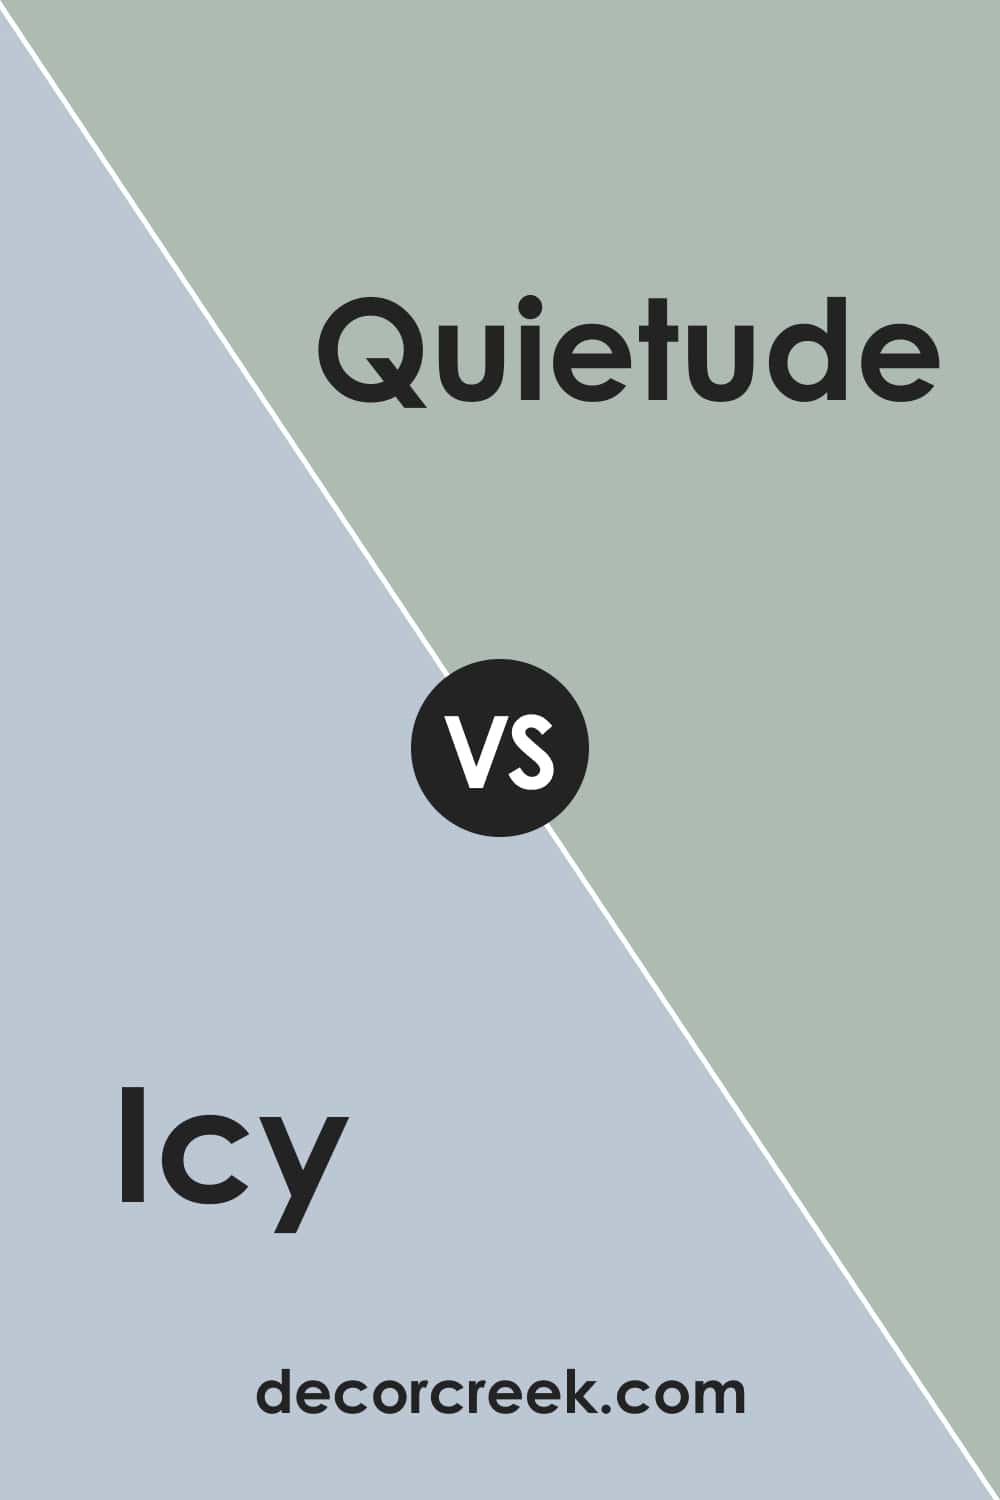 Icy vs. Quietude